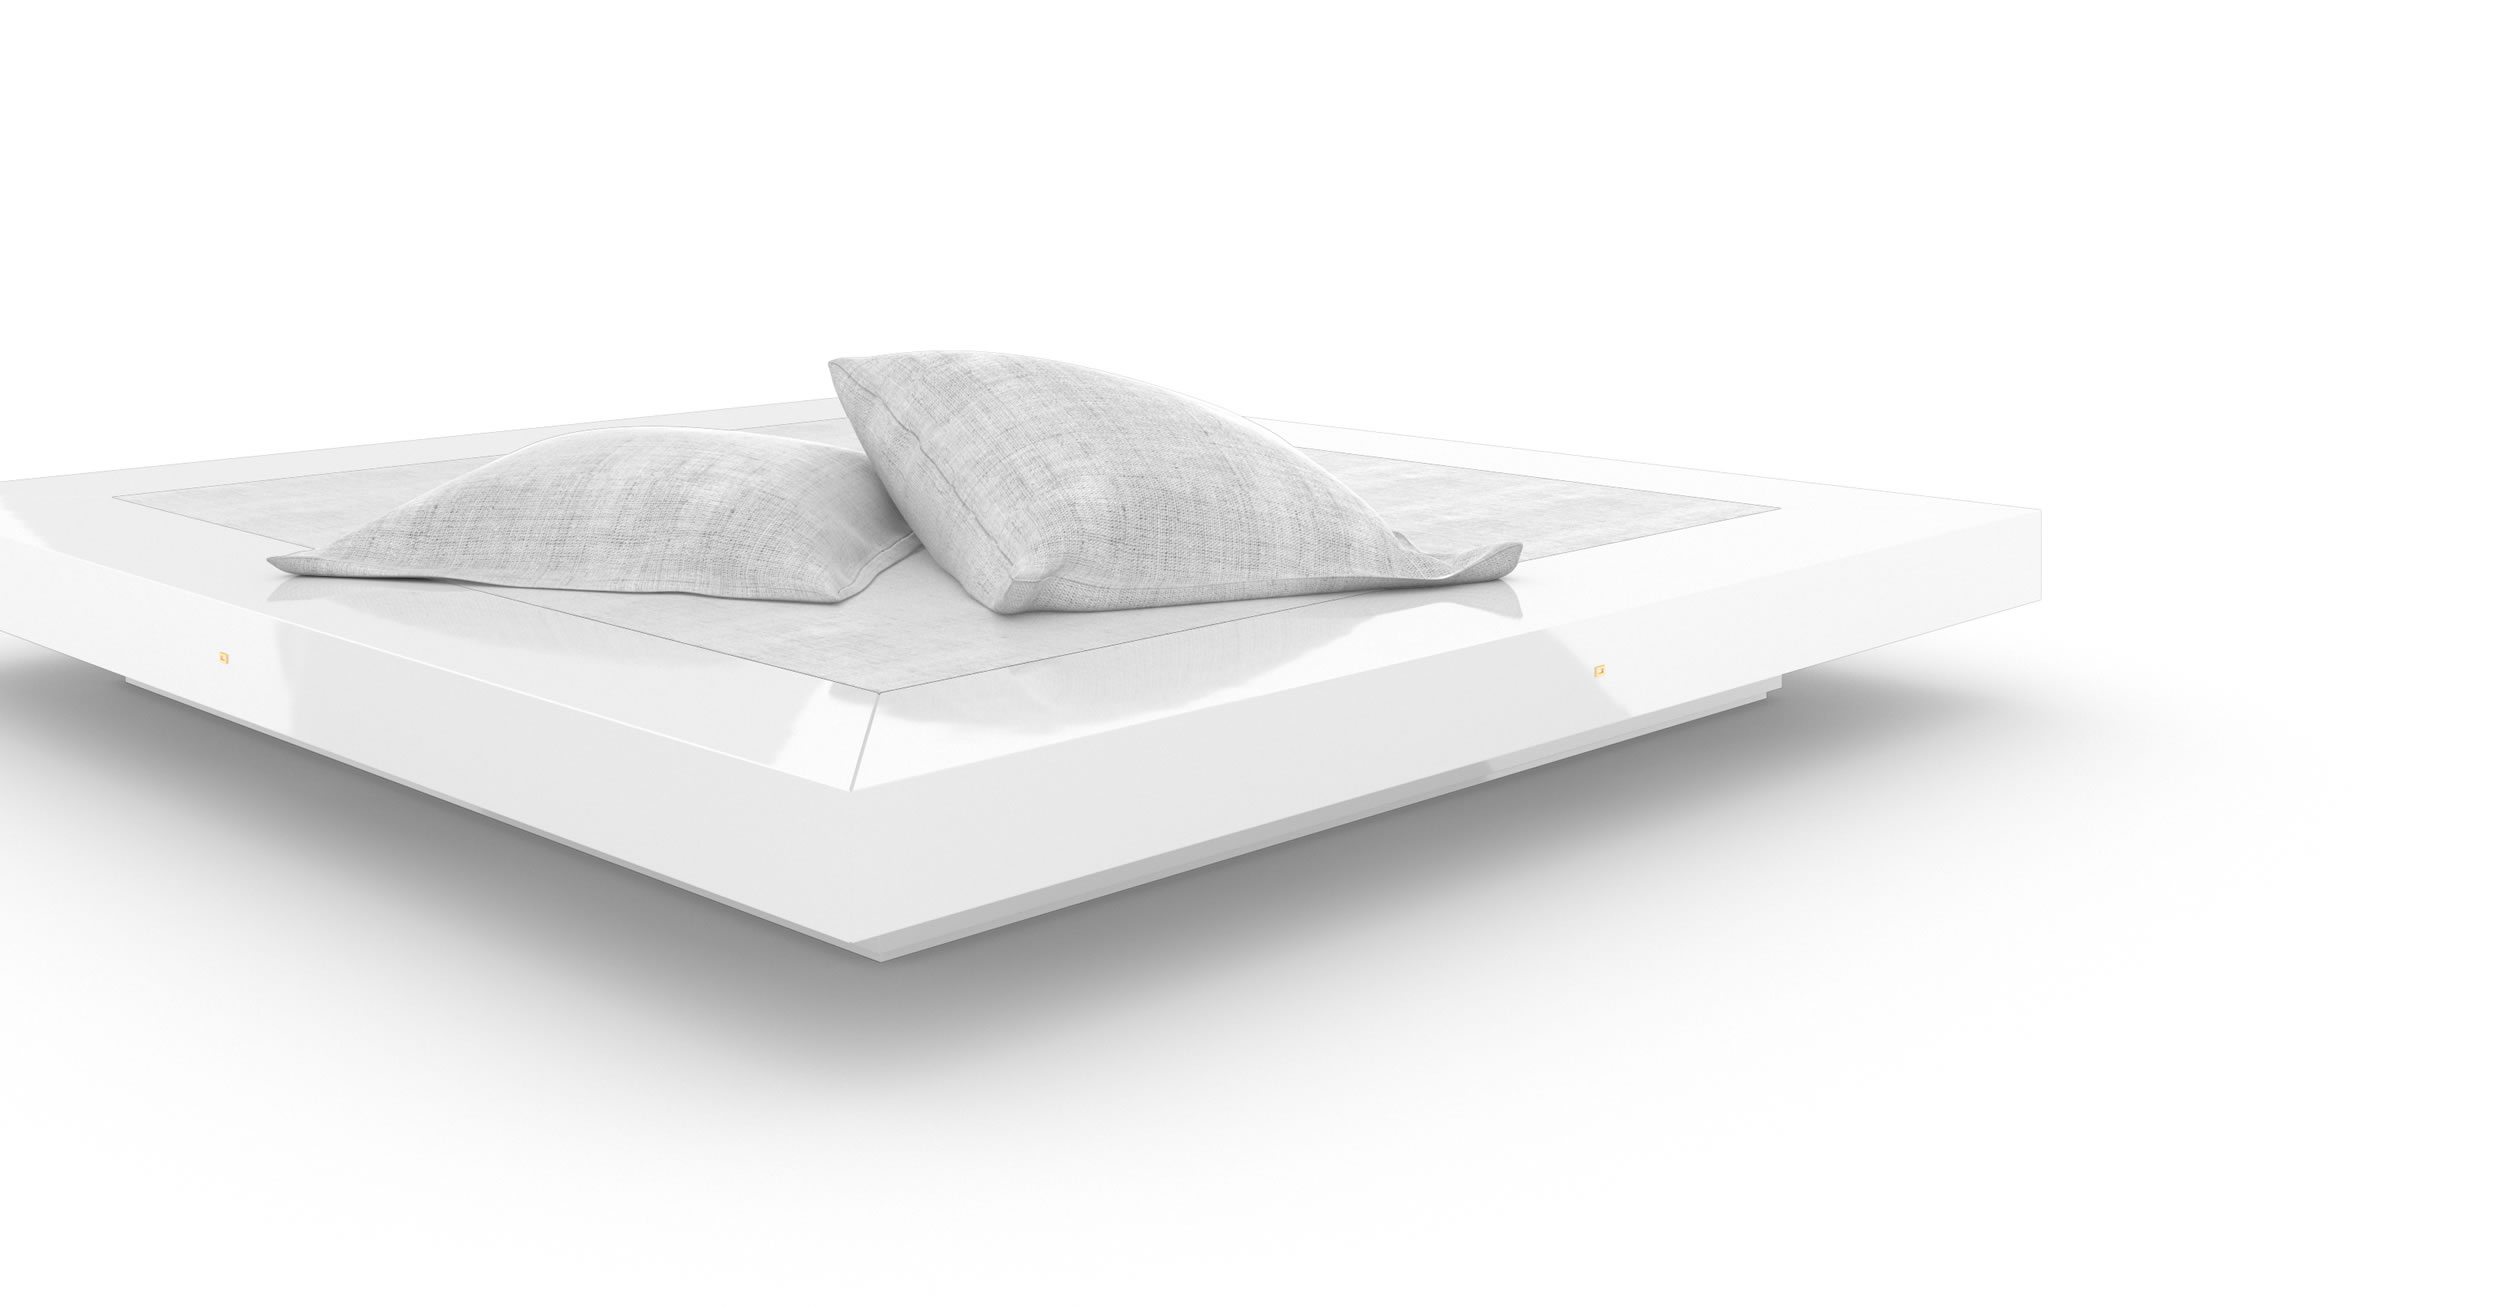 Design Bett Design Weiss Glaenzend Handgefertigt Einzigartig Premium Luxus InteriorFELIX SCHWAKE